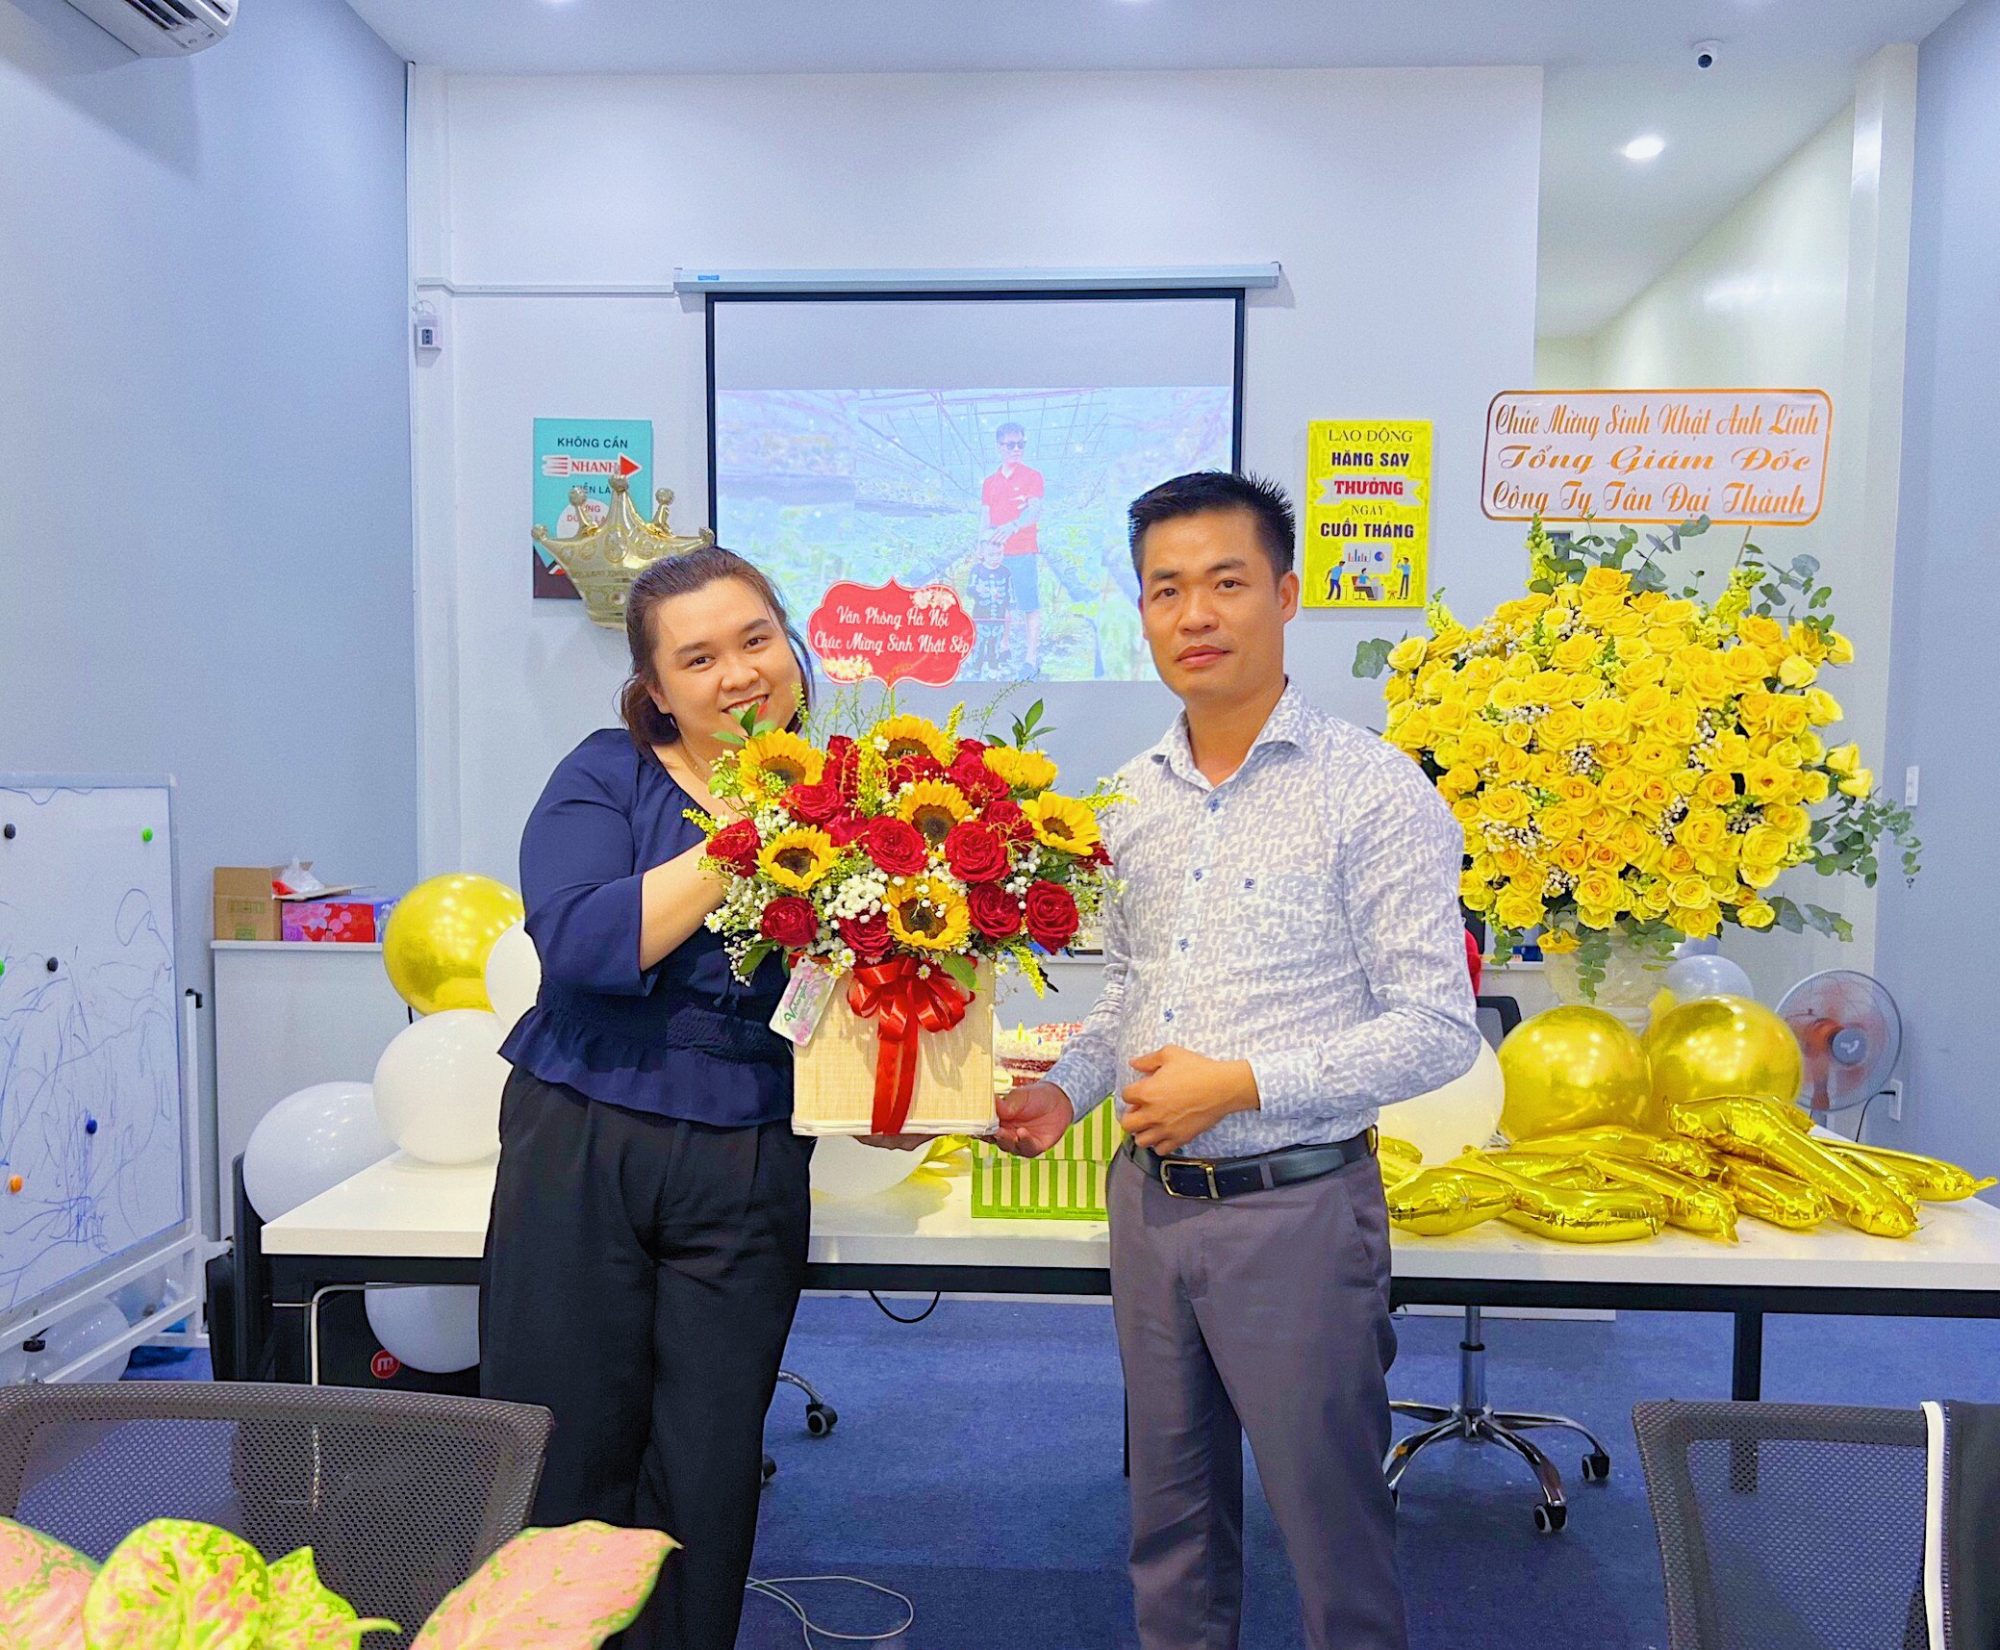 VP HN gửi tăng giỏ hoa tươi thắm cho Chủ tịch